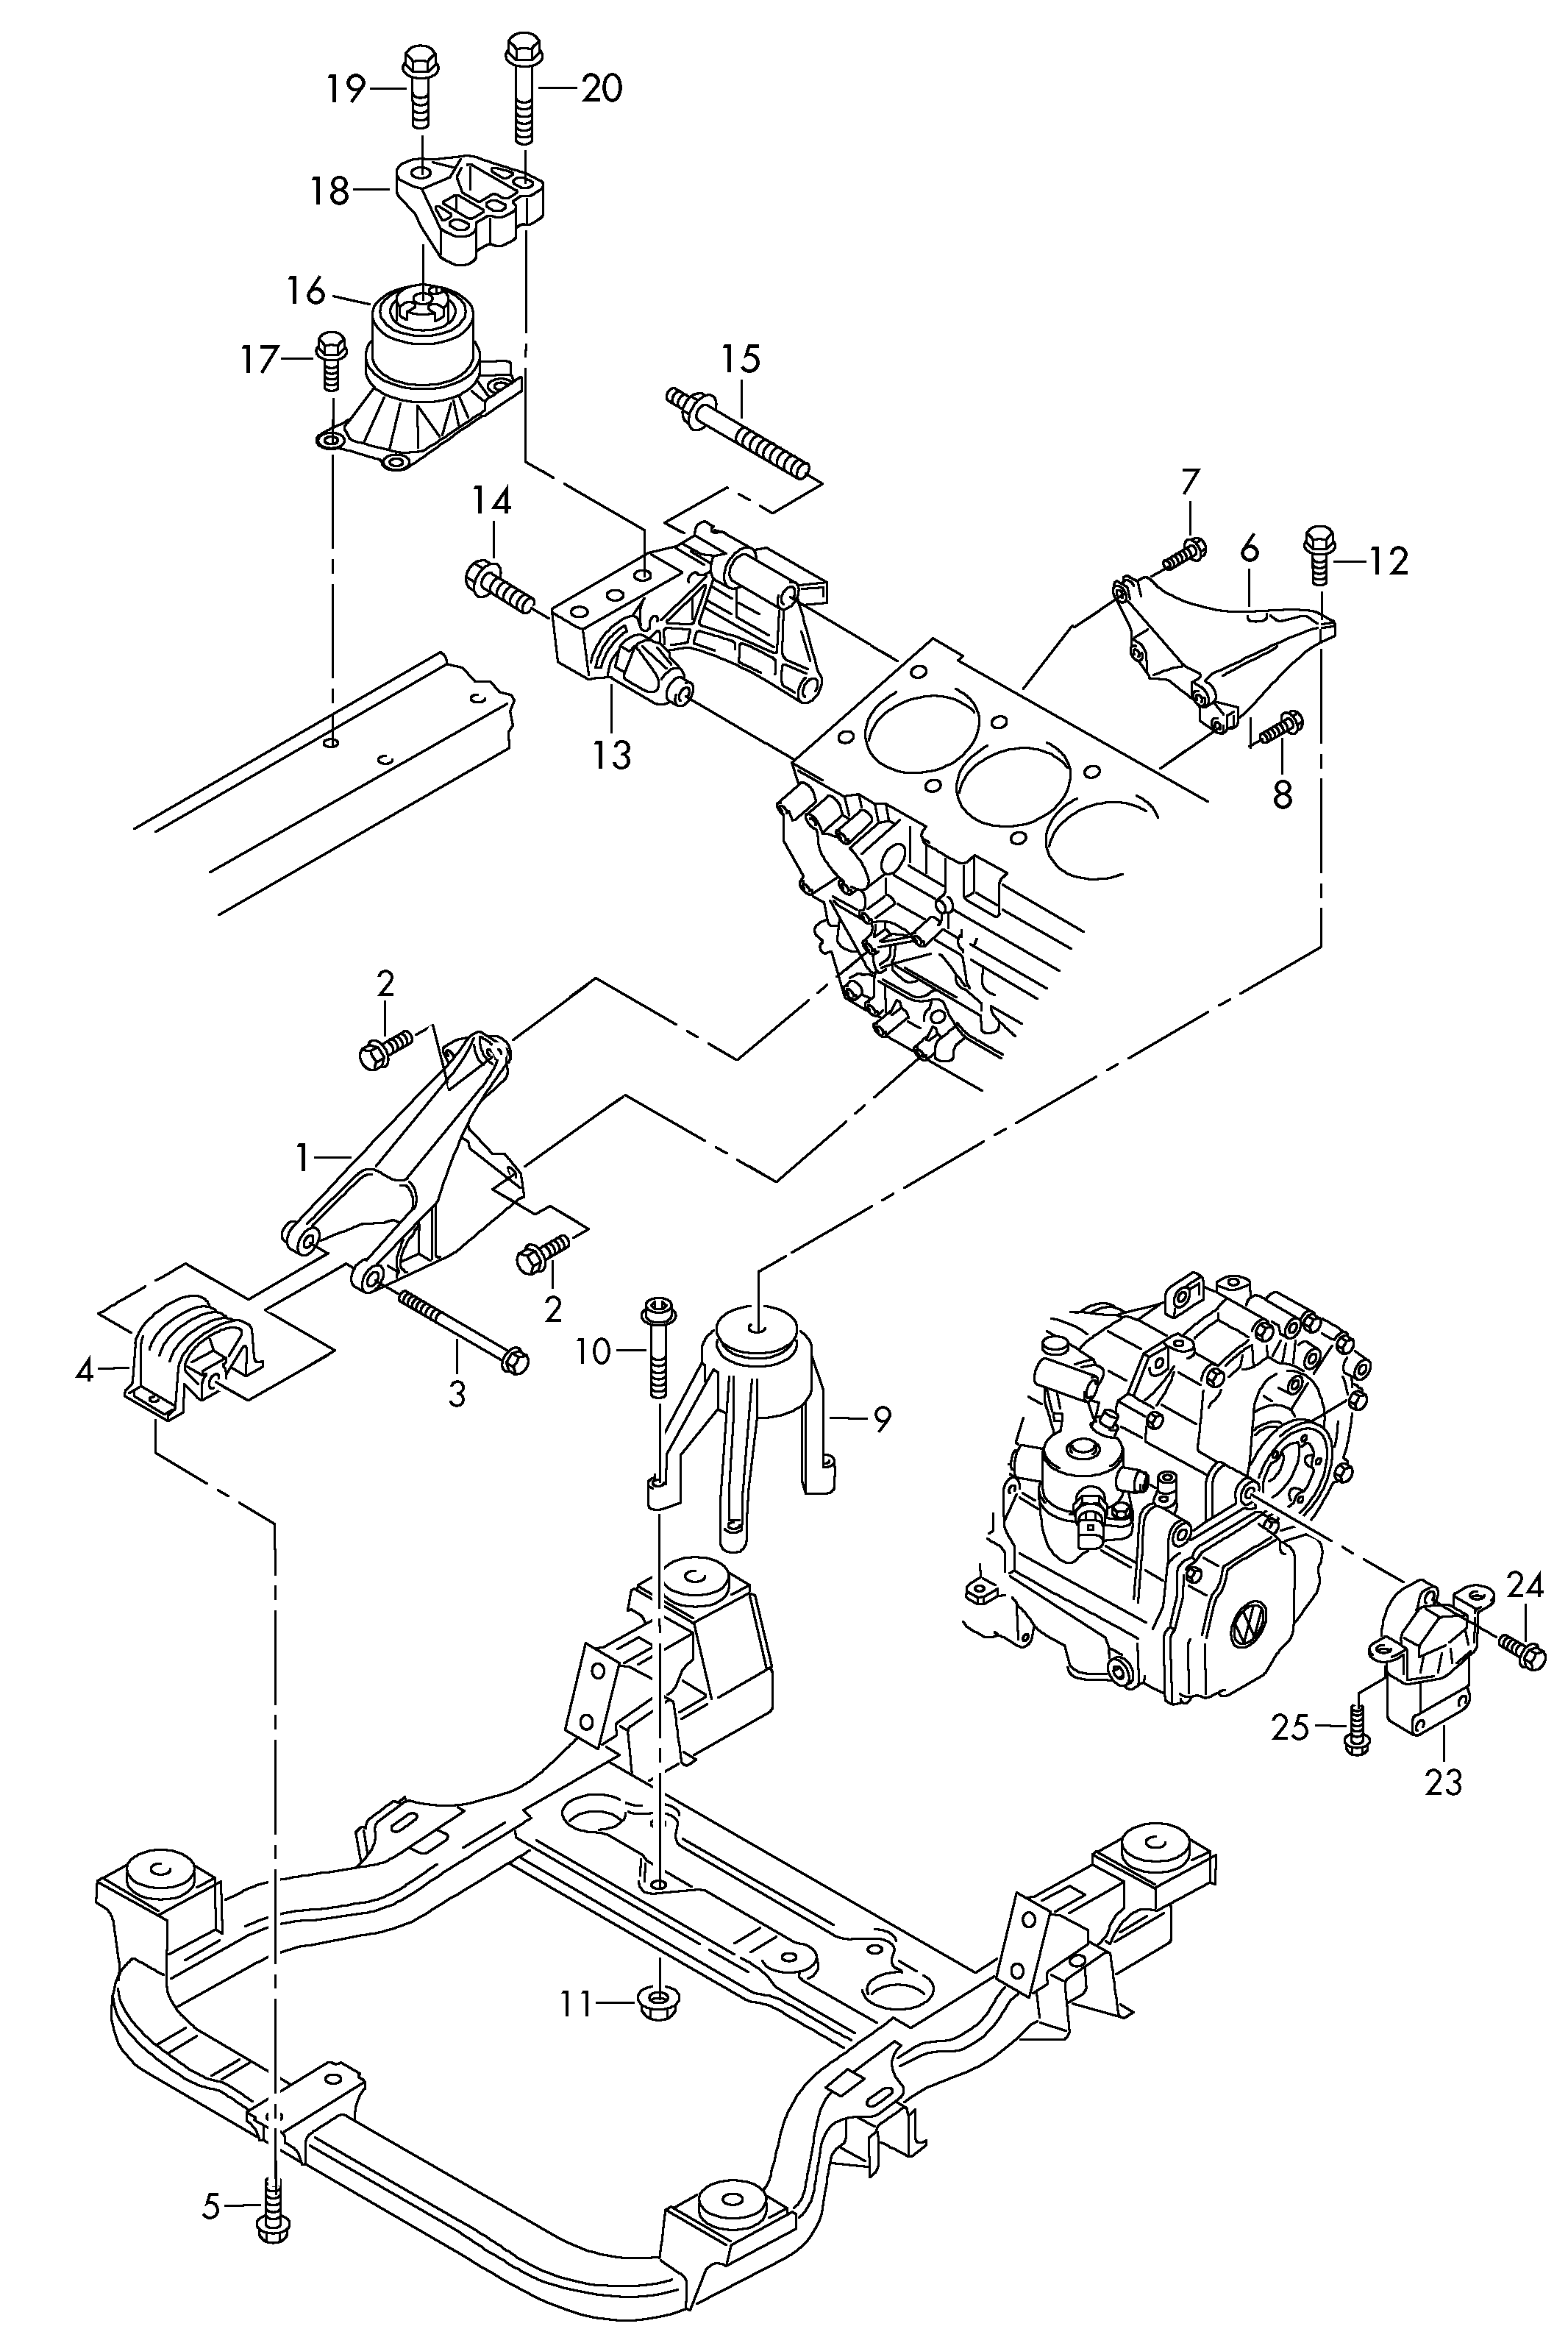 elementy mocujace silnik<br>i skrzynie biegow 2,0 l - Transporter - tr